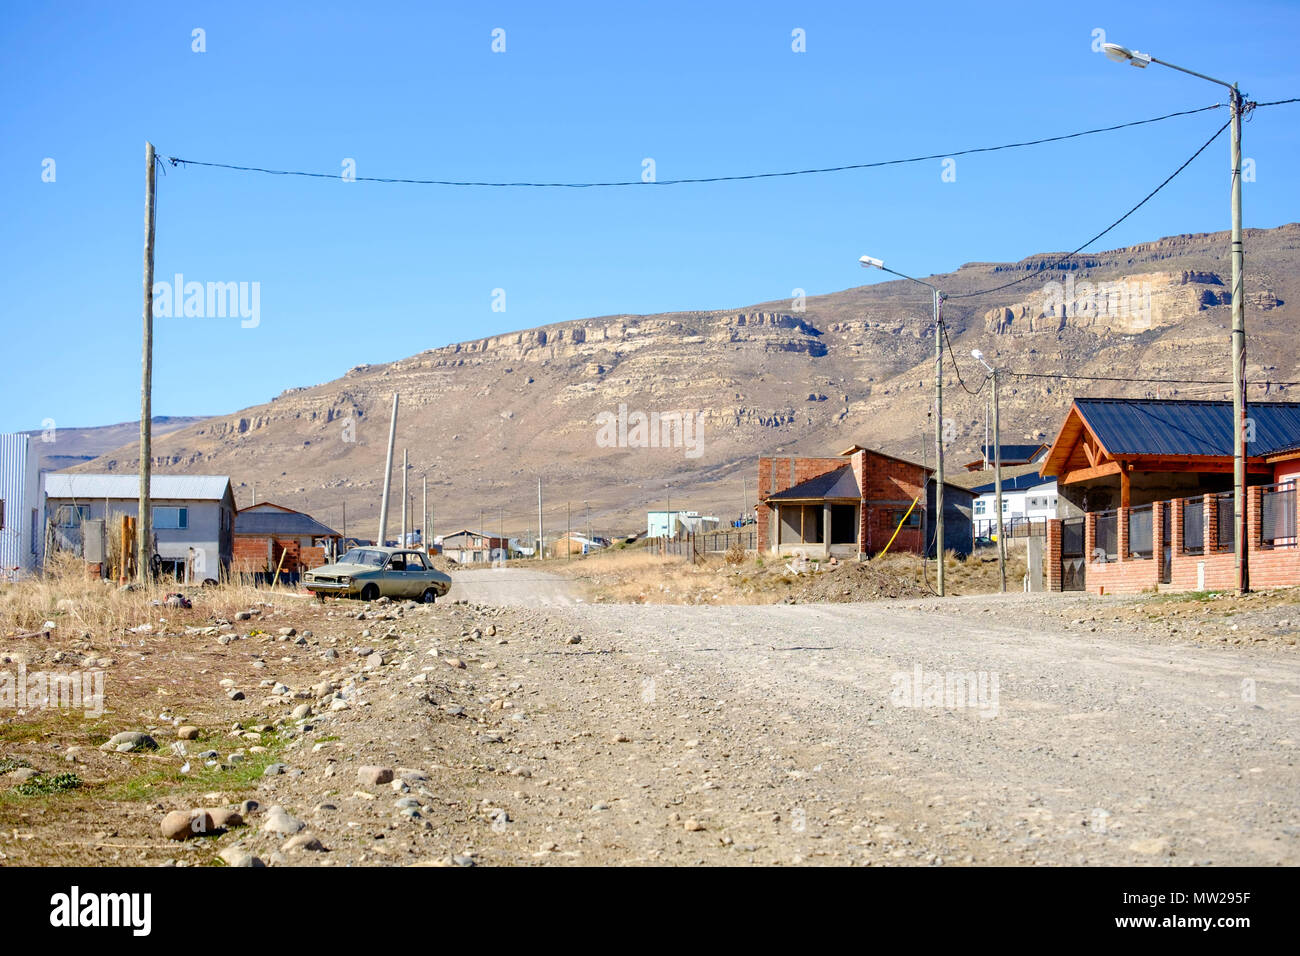 Cuando se llega a las afueras de El Calafate en la Patagonia Argentina, se ven caminos polvorientos como éste, con algunas casas a lo largo de la carretera. Foto de stock